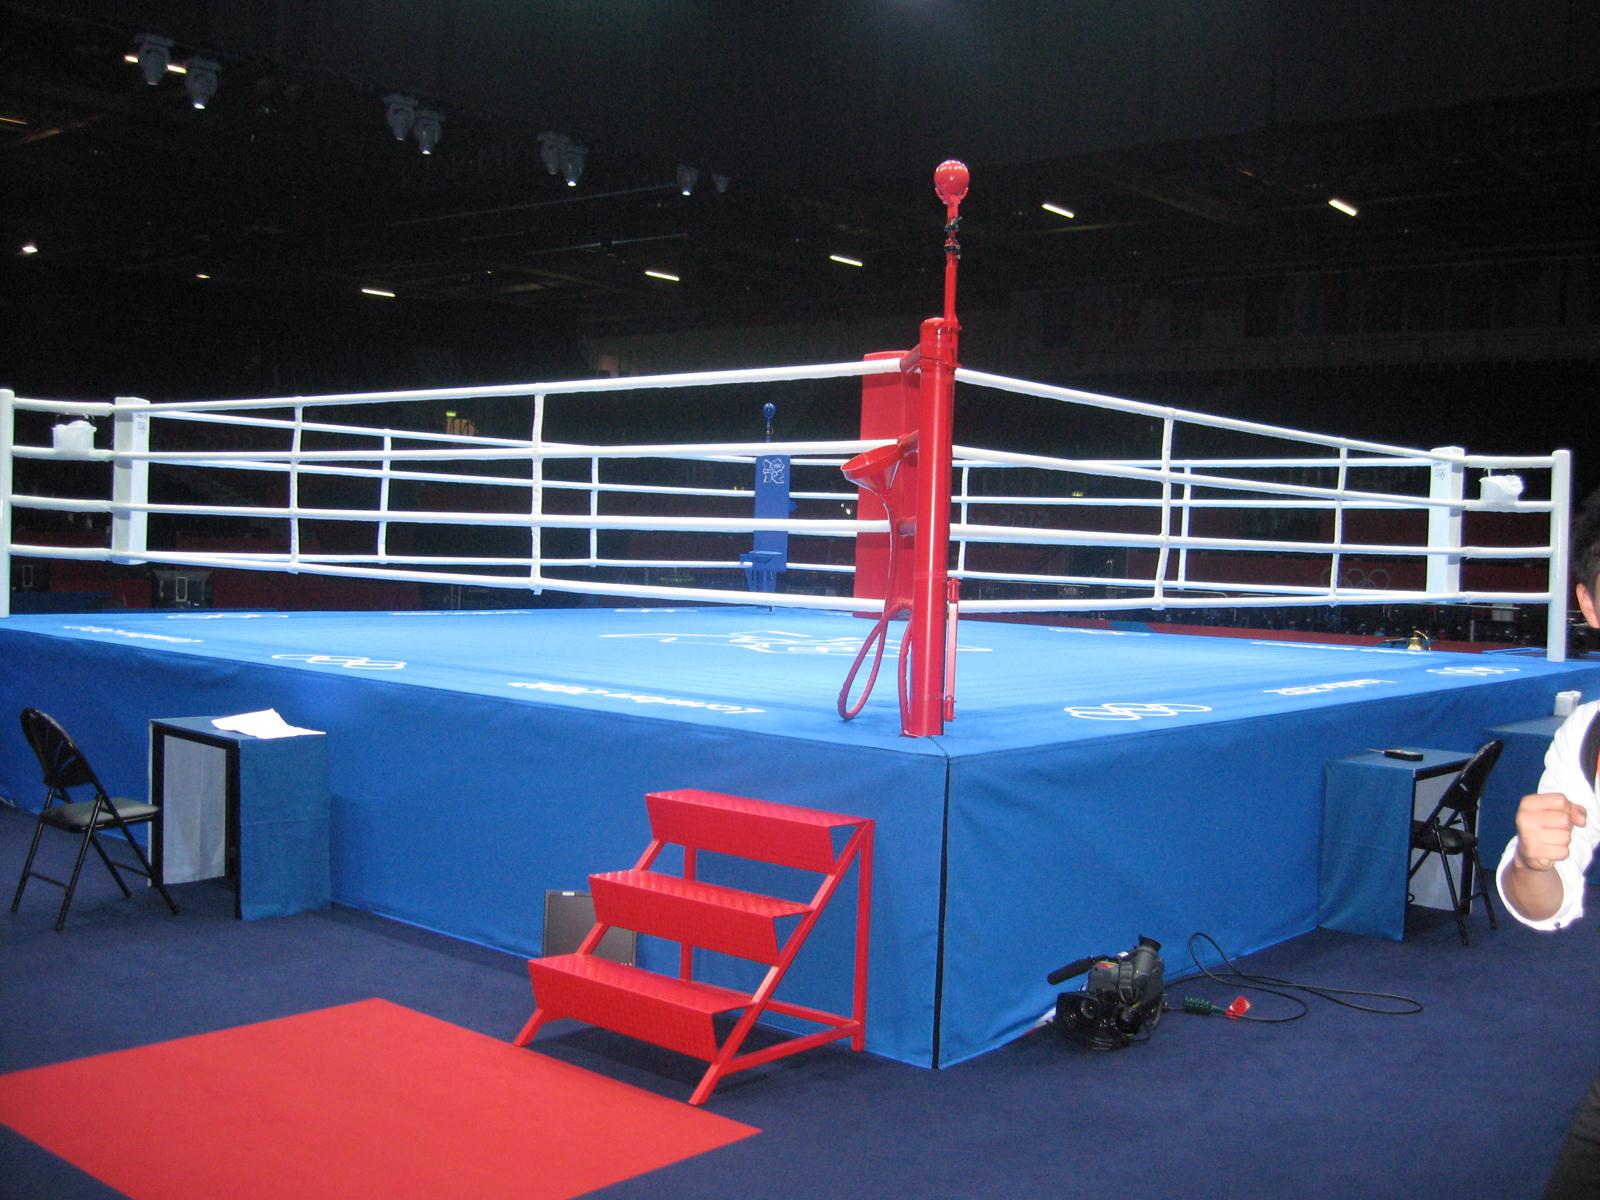 ロンドンオリンピック抽選模様及び試合会場内のリングについて 紹介 一般社団法人 日本ボクシング連盟